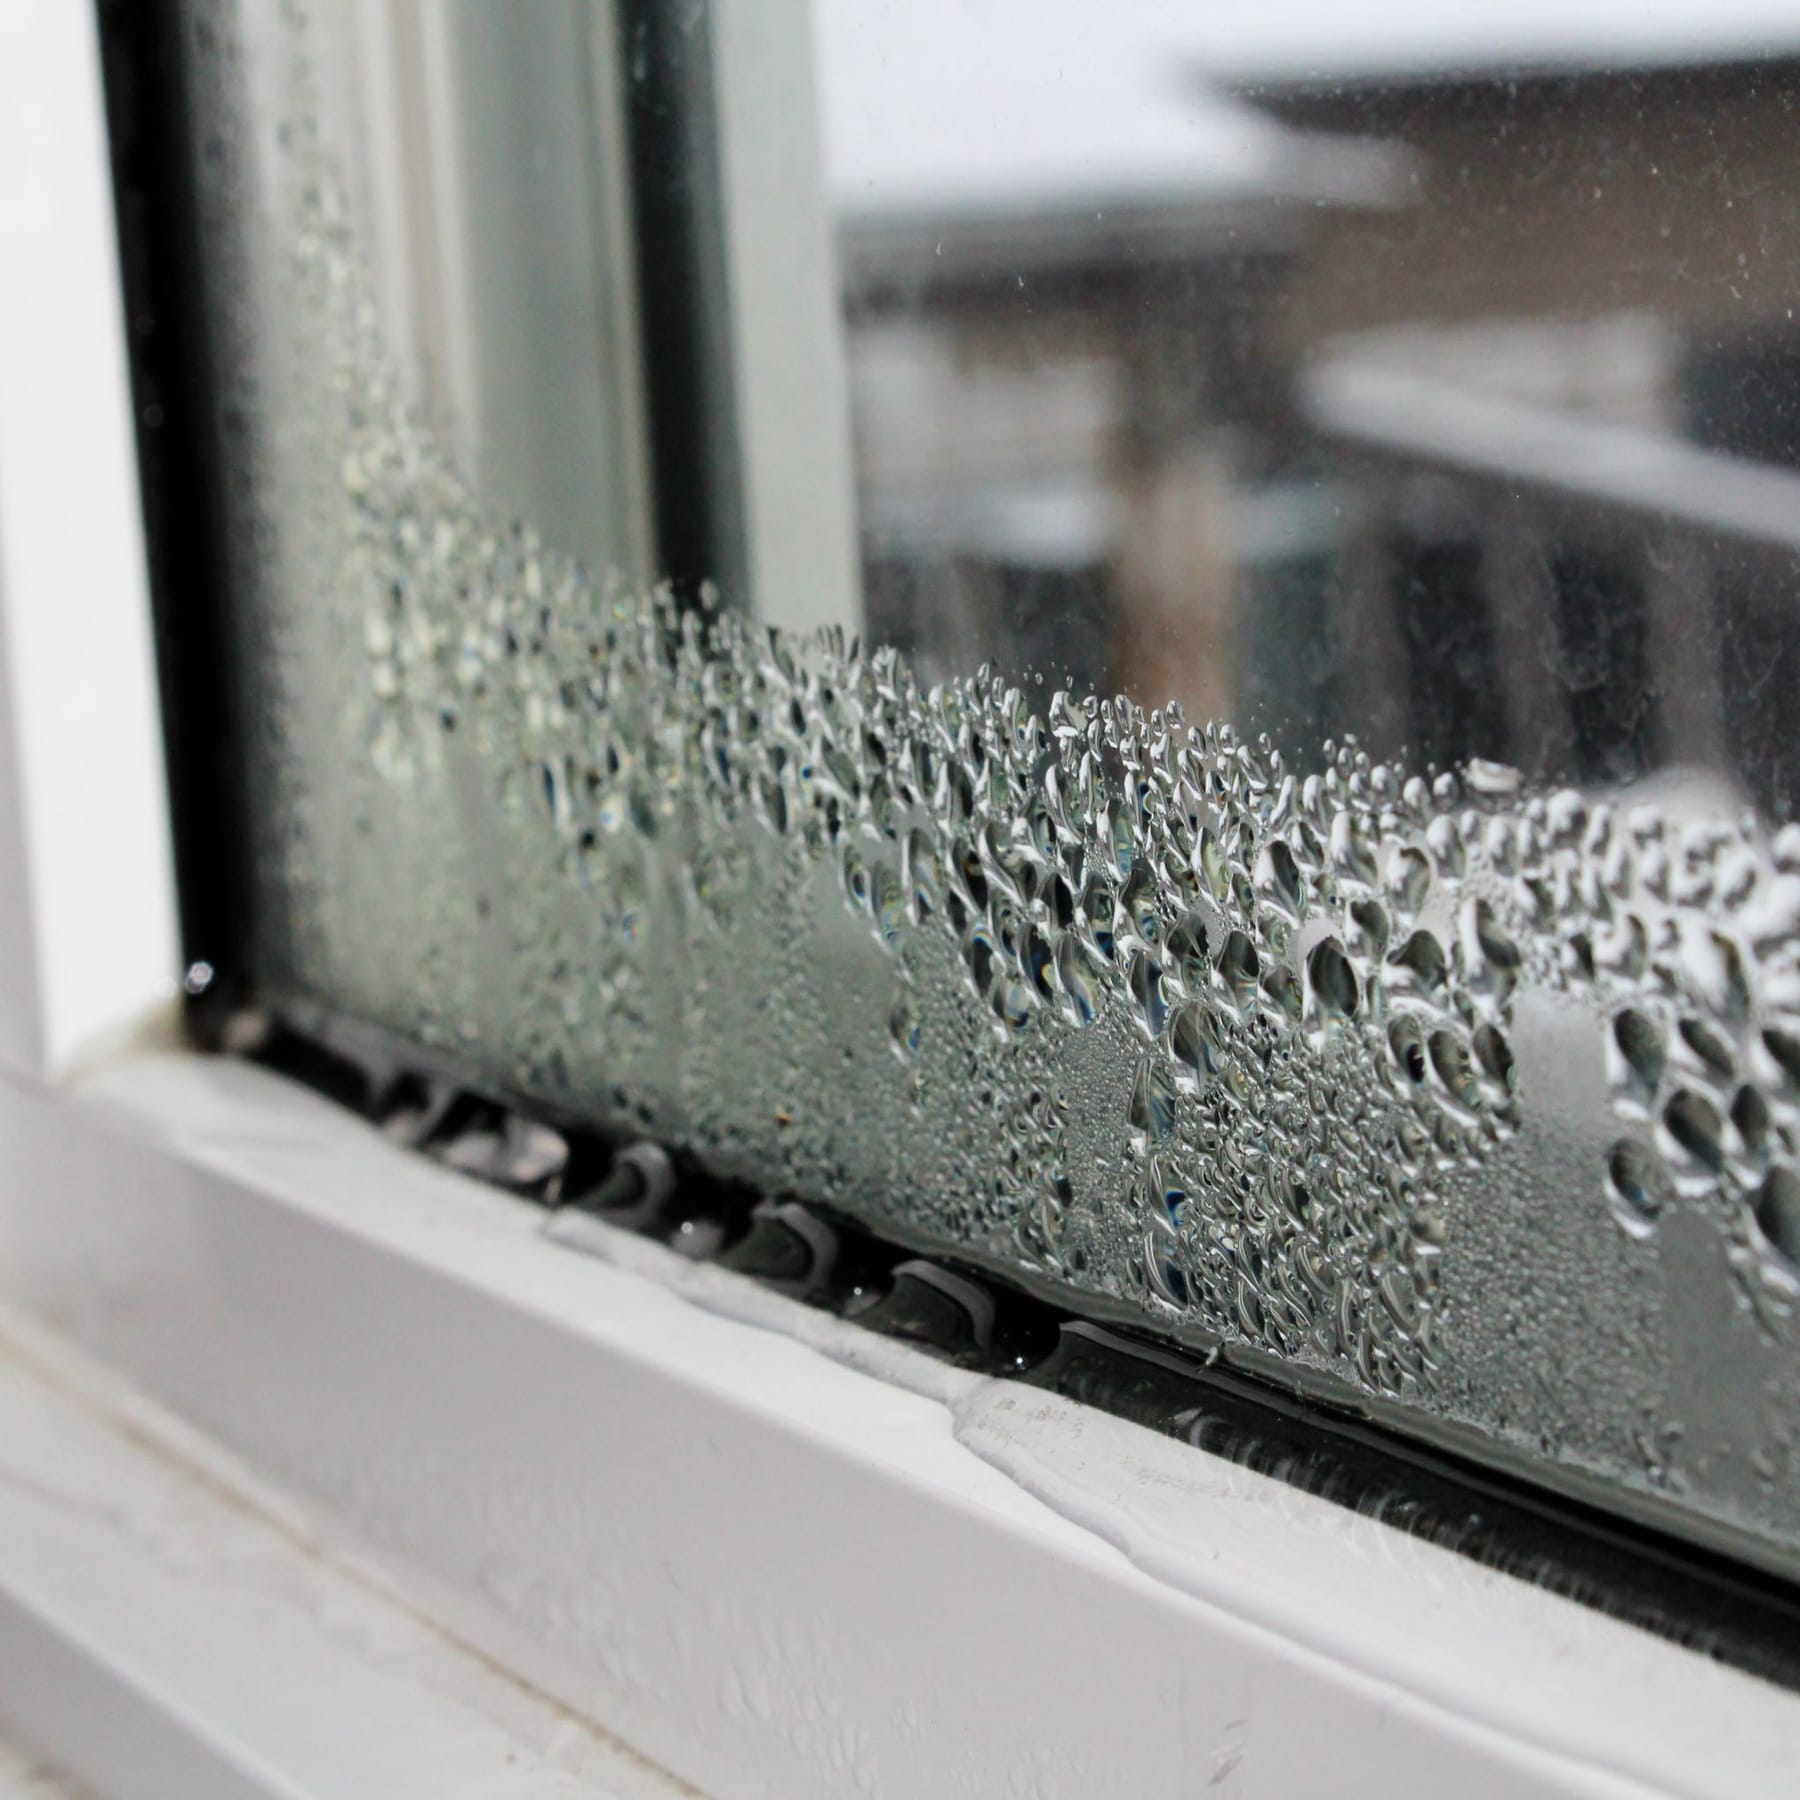 Wie vermeidet man Kondenswasser innen am Fenster?